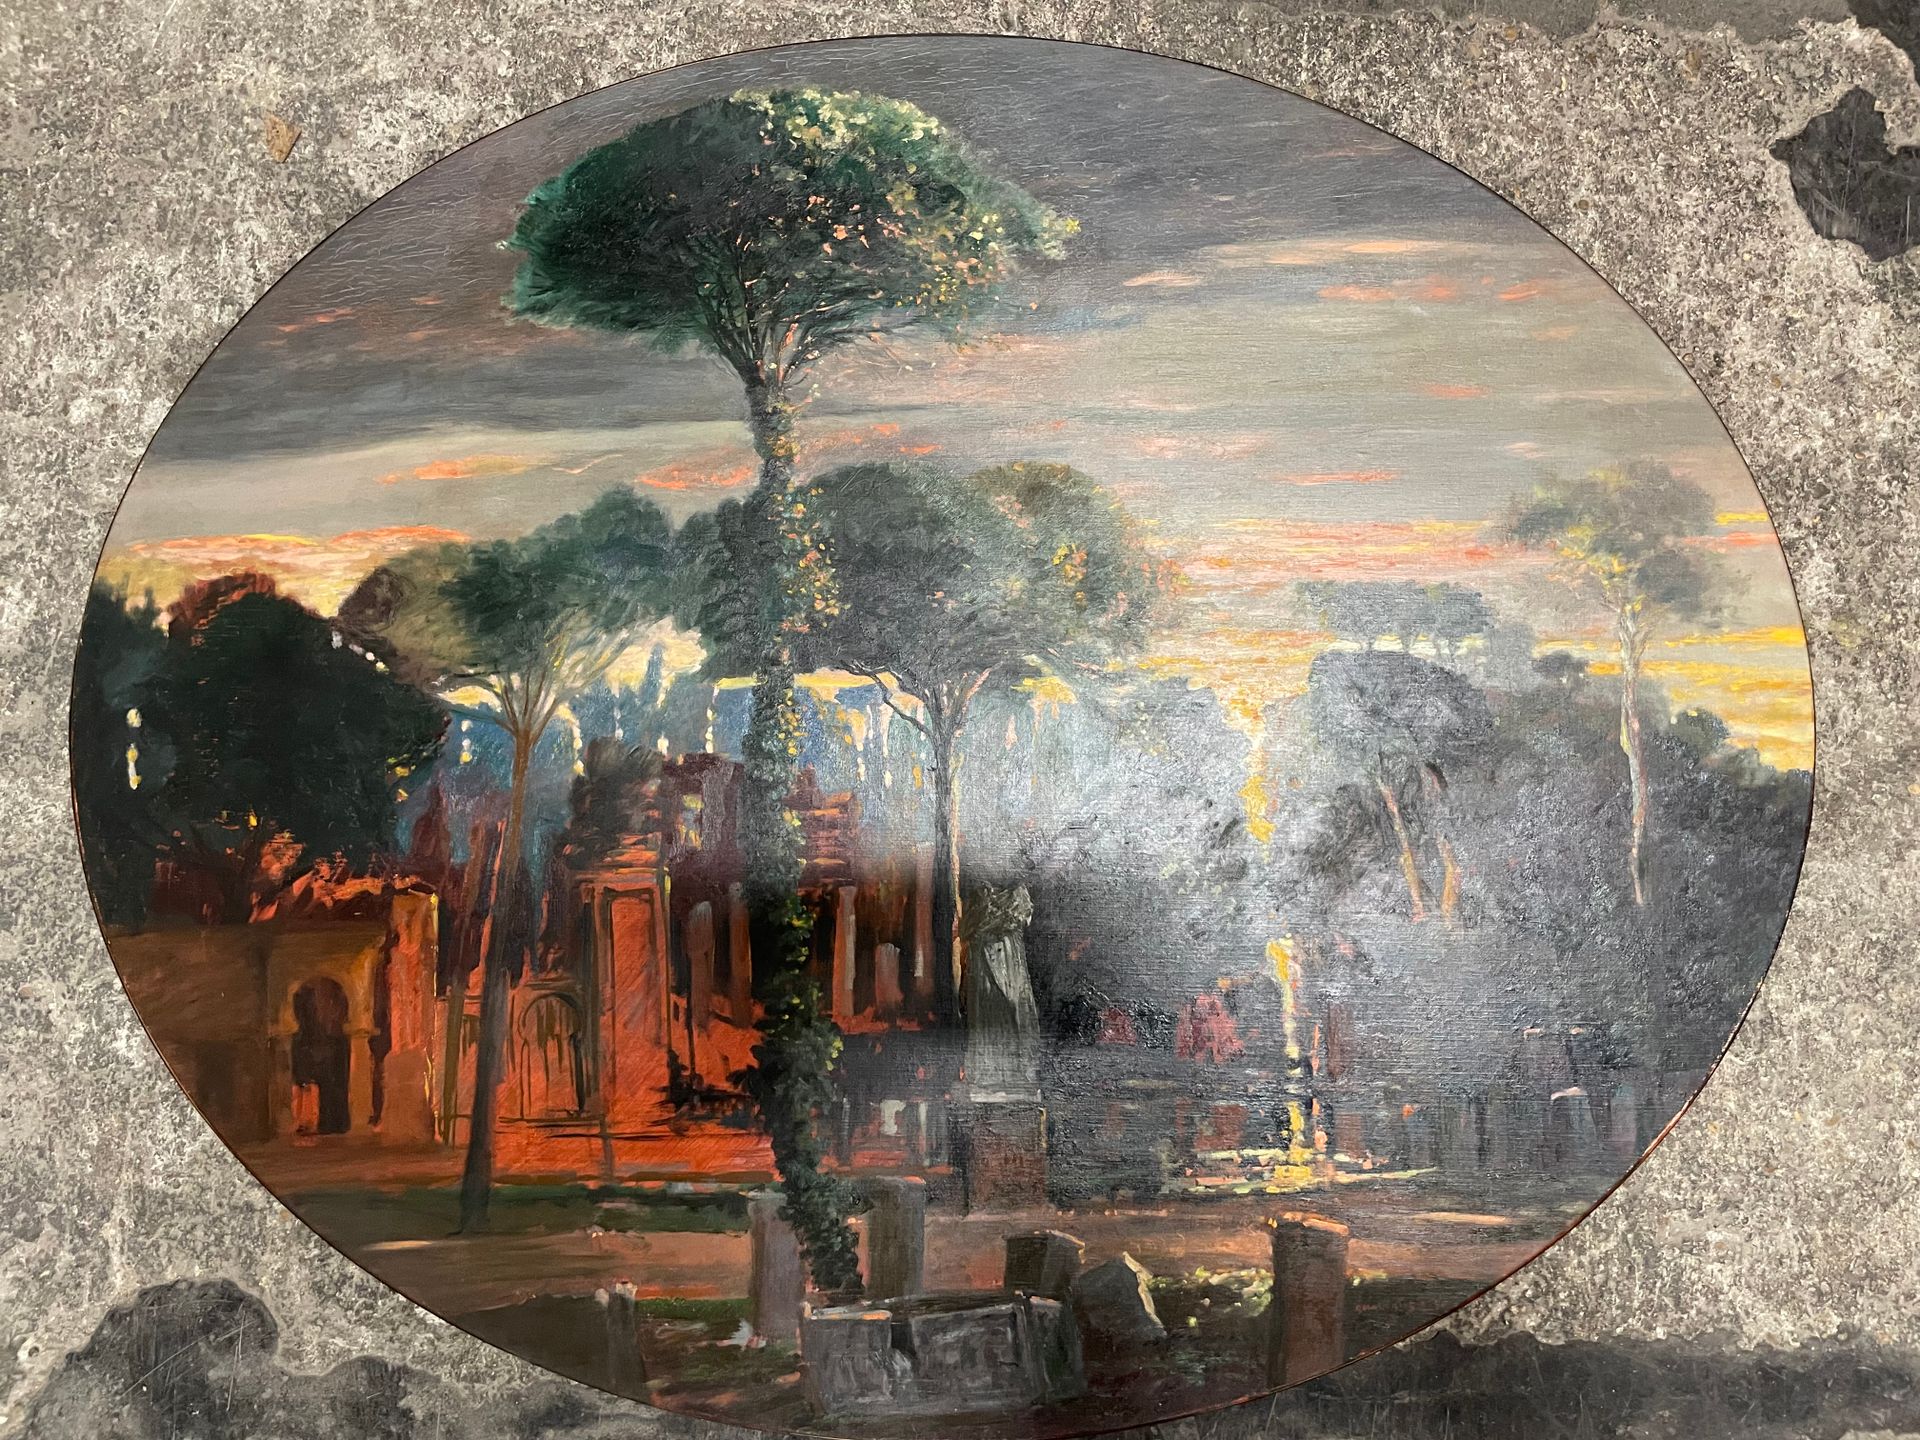 Gérard DIAZ (1938) Ancient landscape
Oil on panel
Signed lower right
81x101 cm